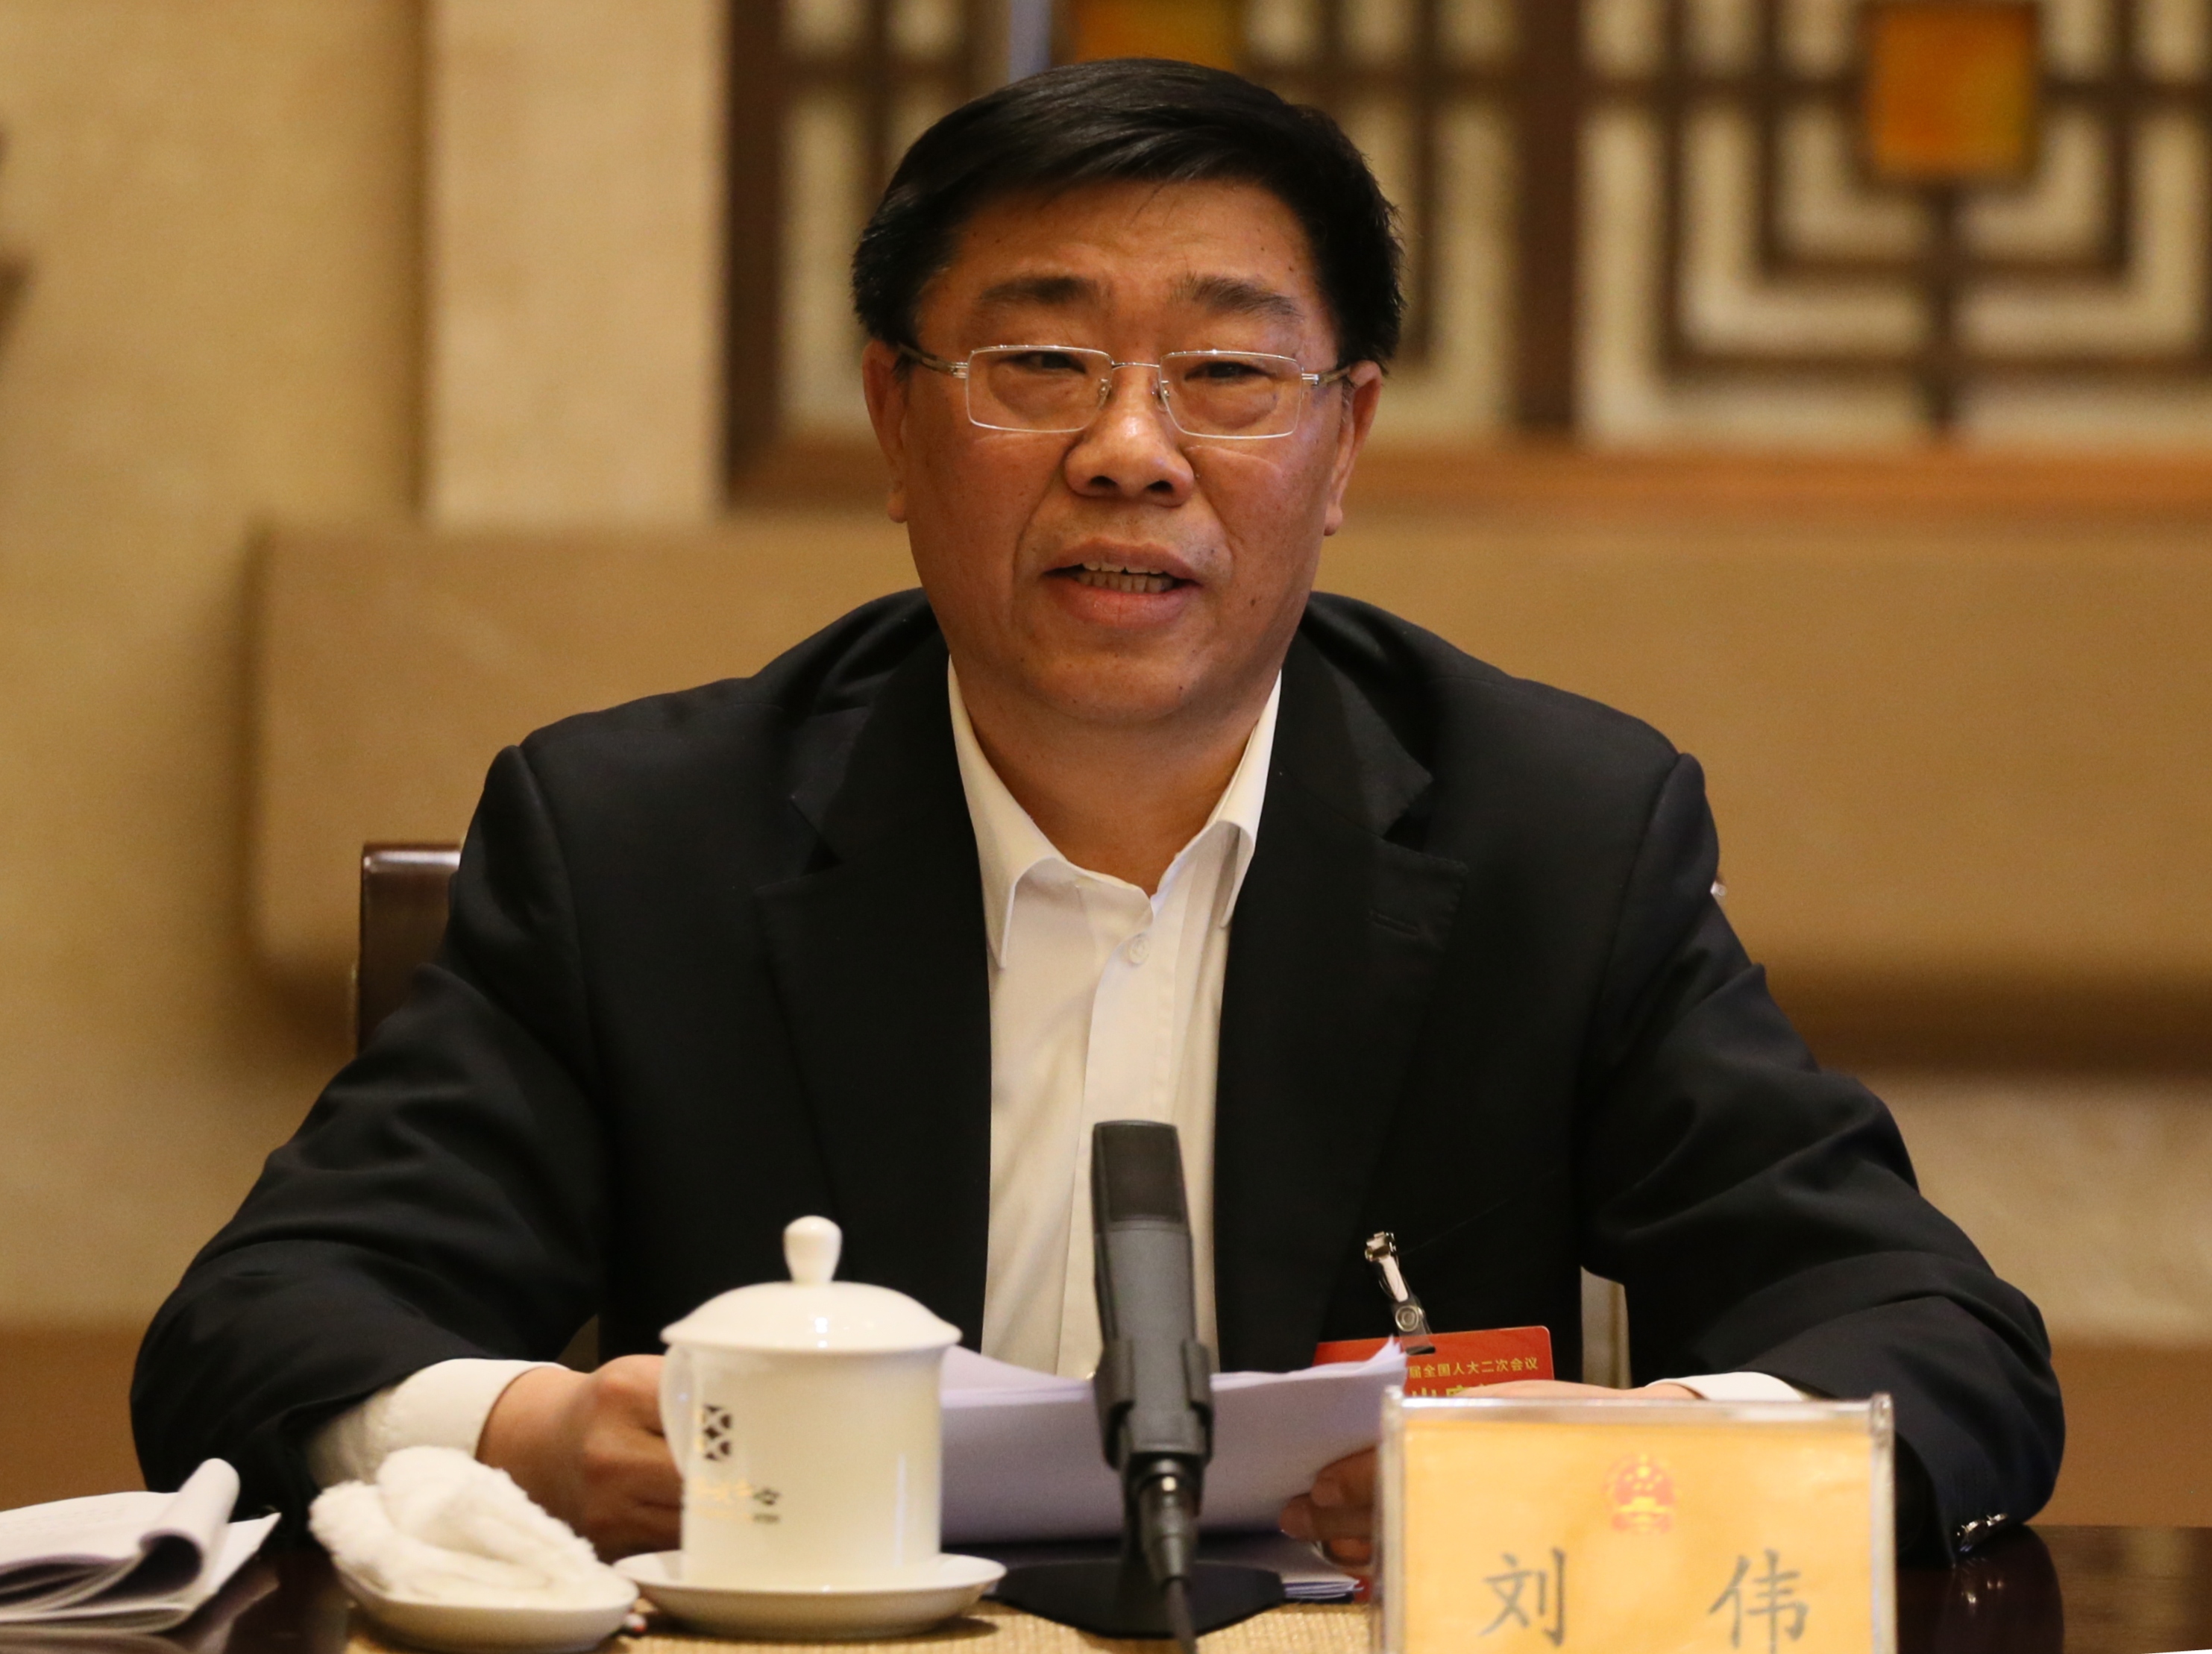 刘伟代表:建议对违法建设等违法行为提起公益诉讼